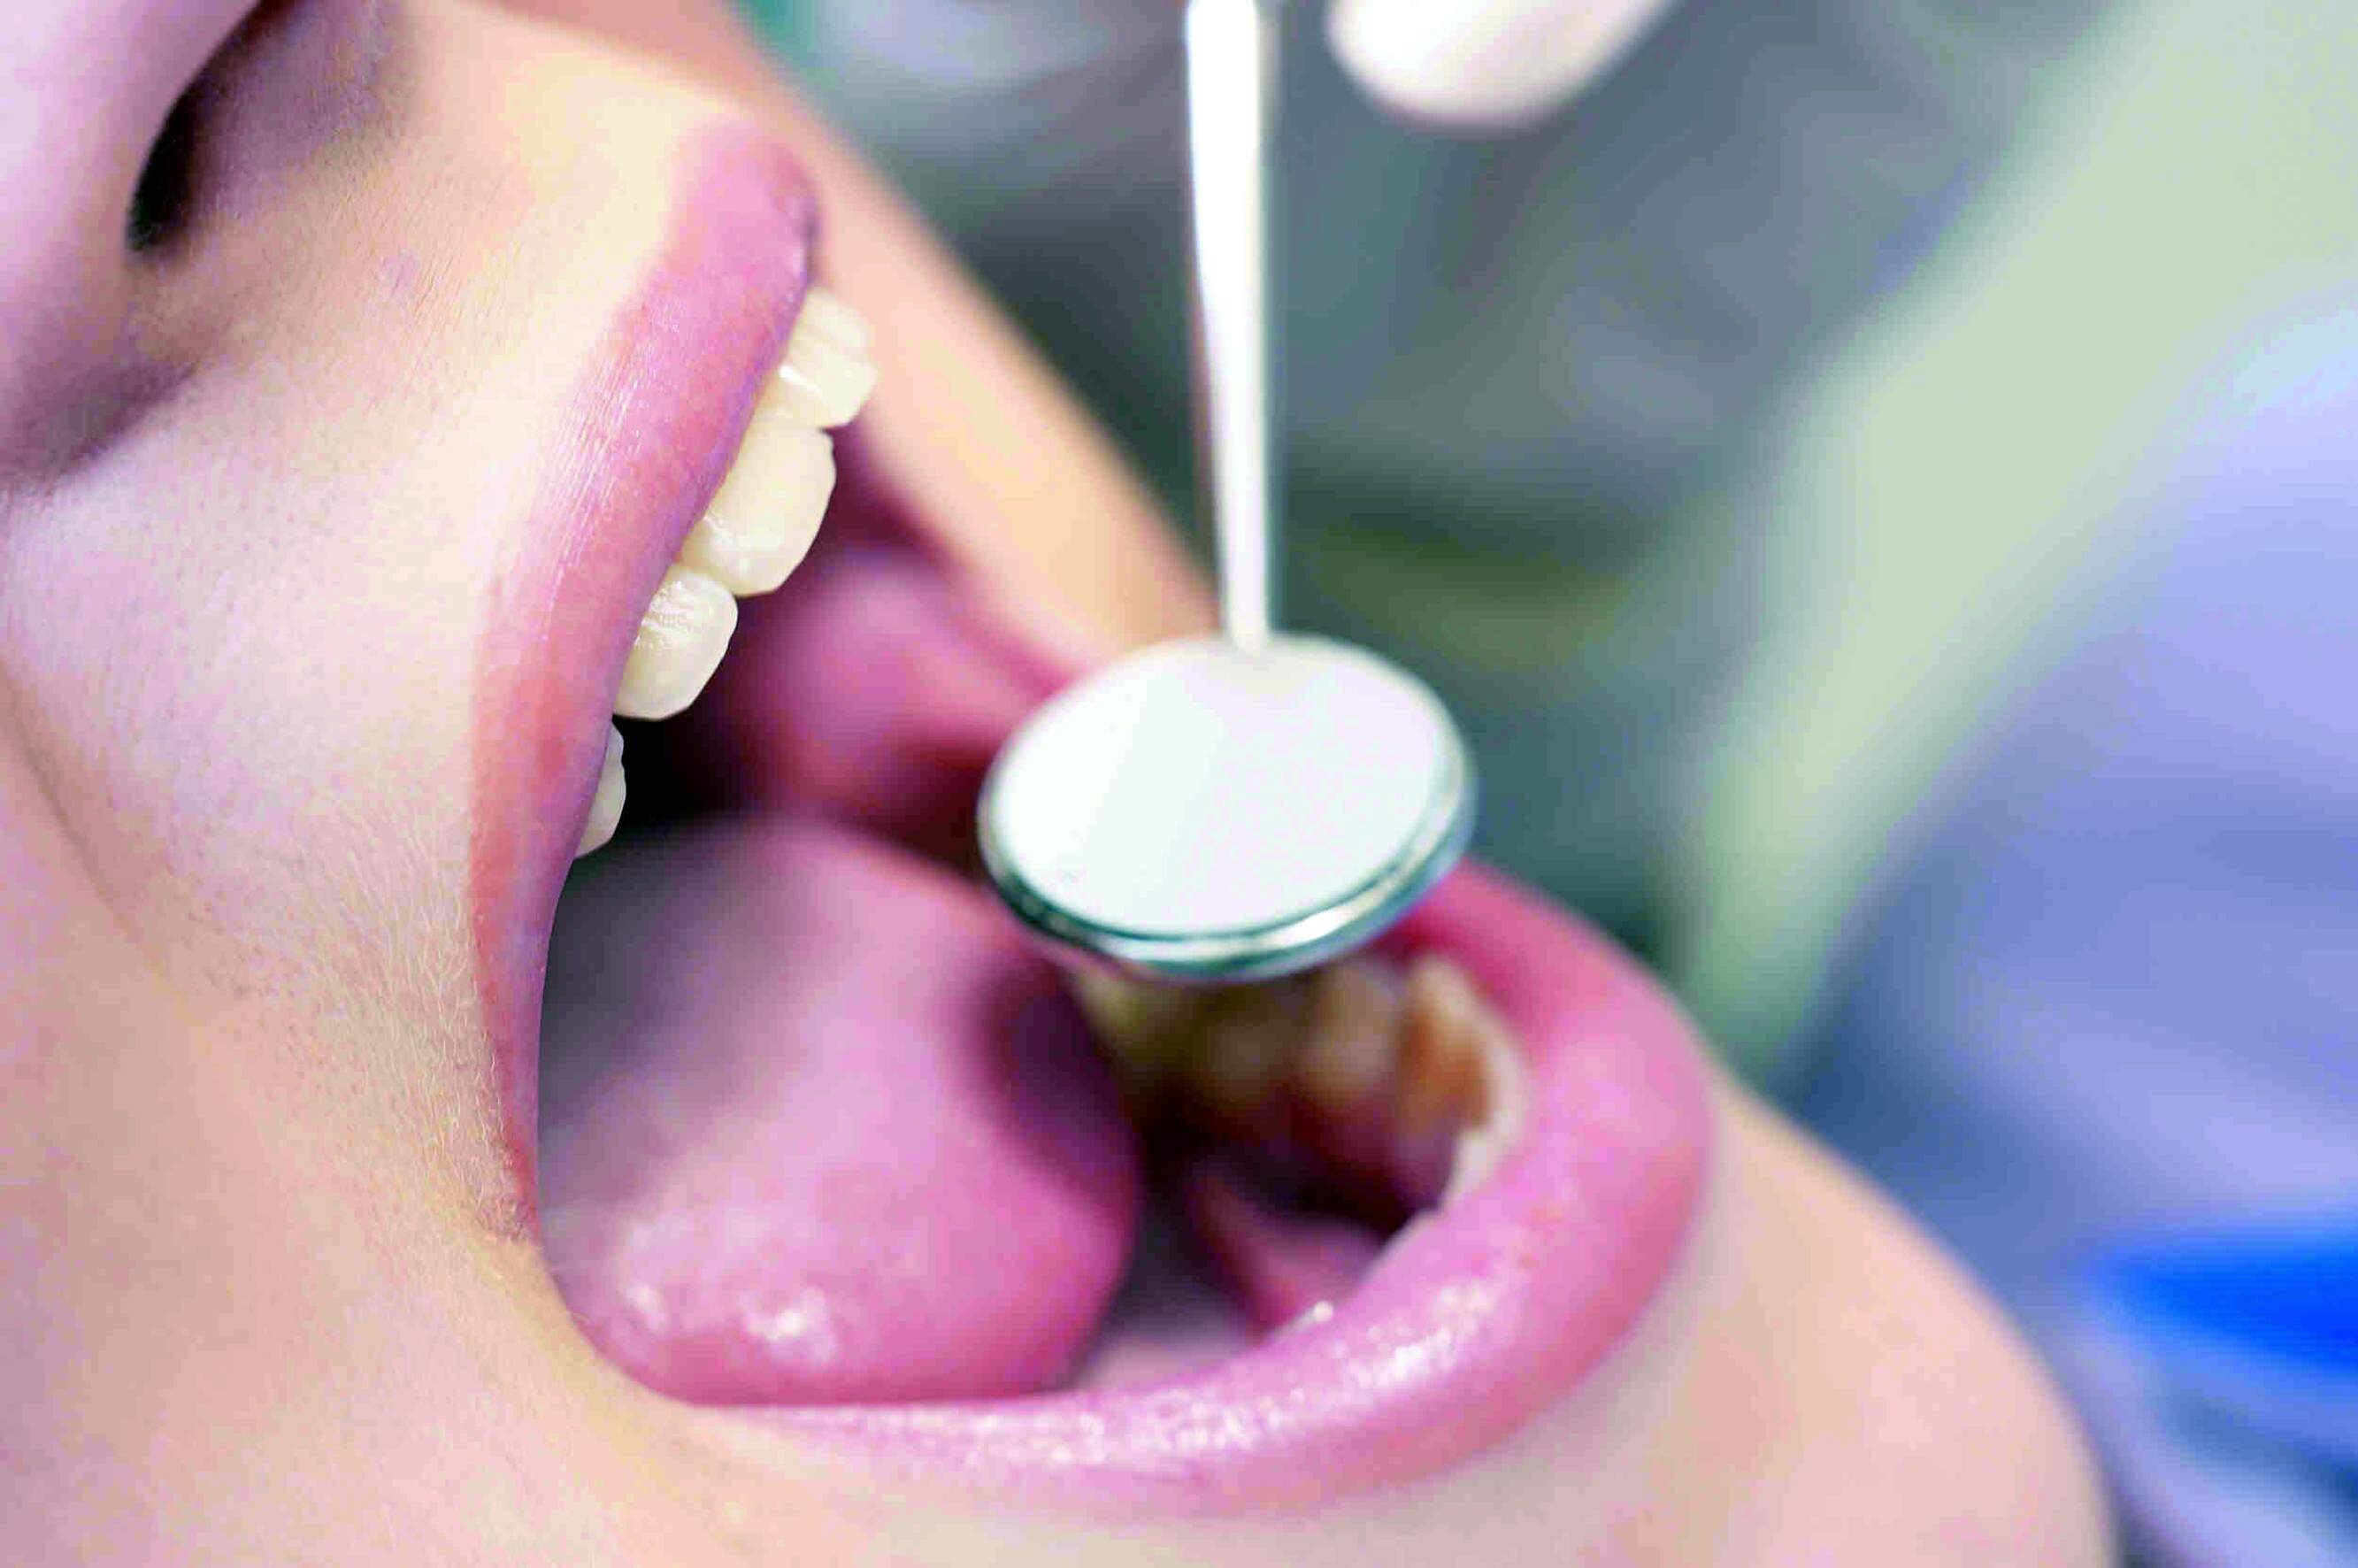 El peligro de los implantes dentales "low cost"